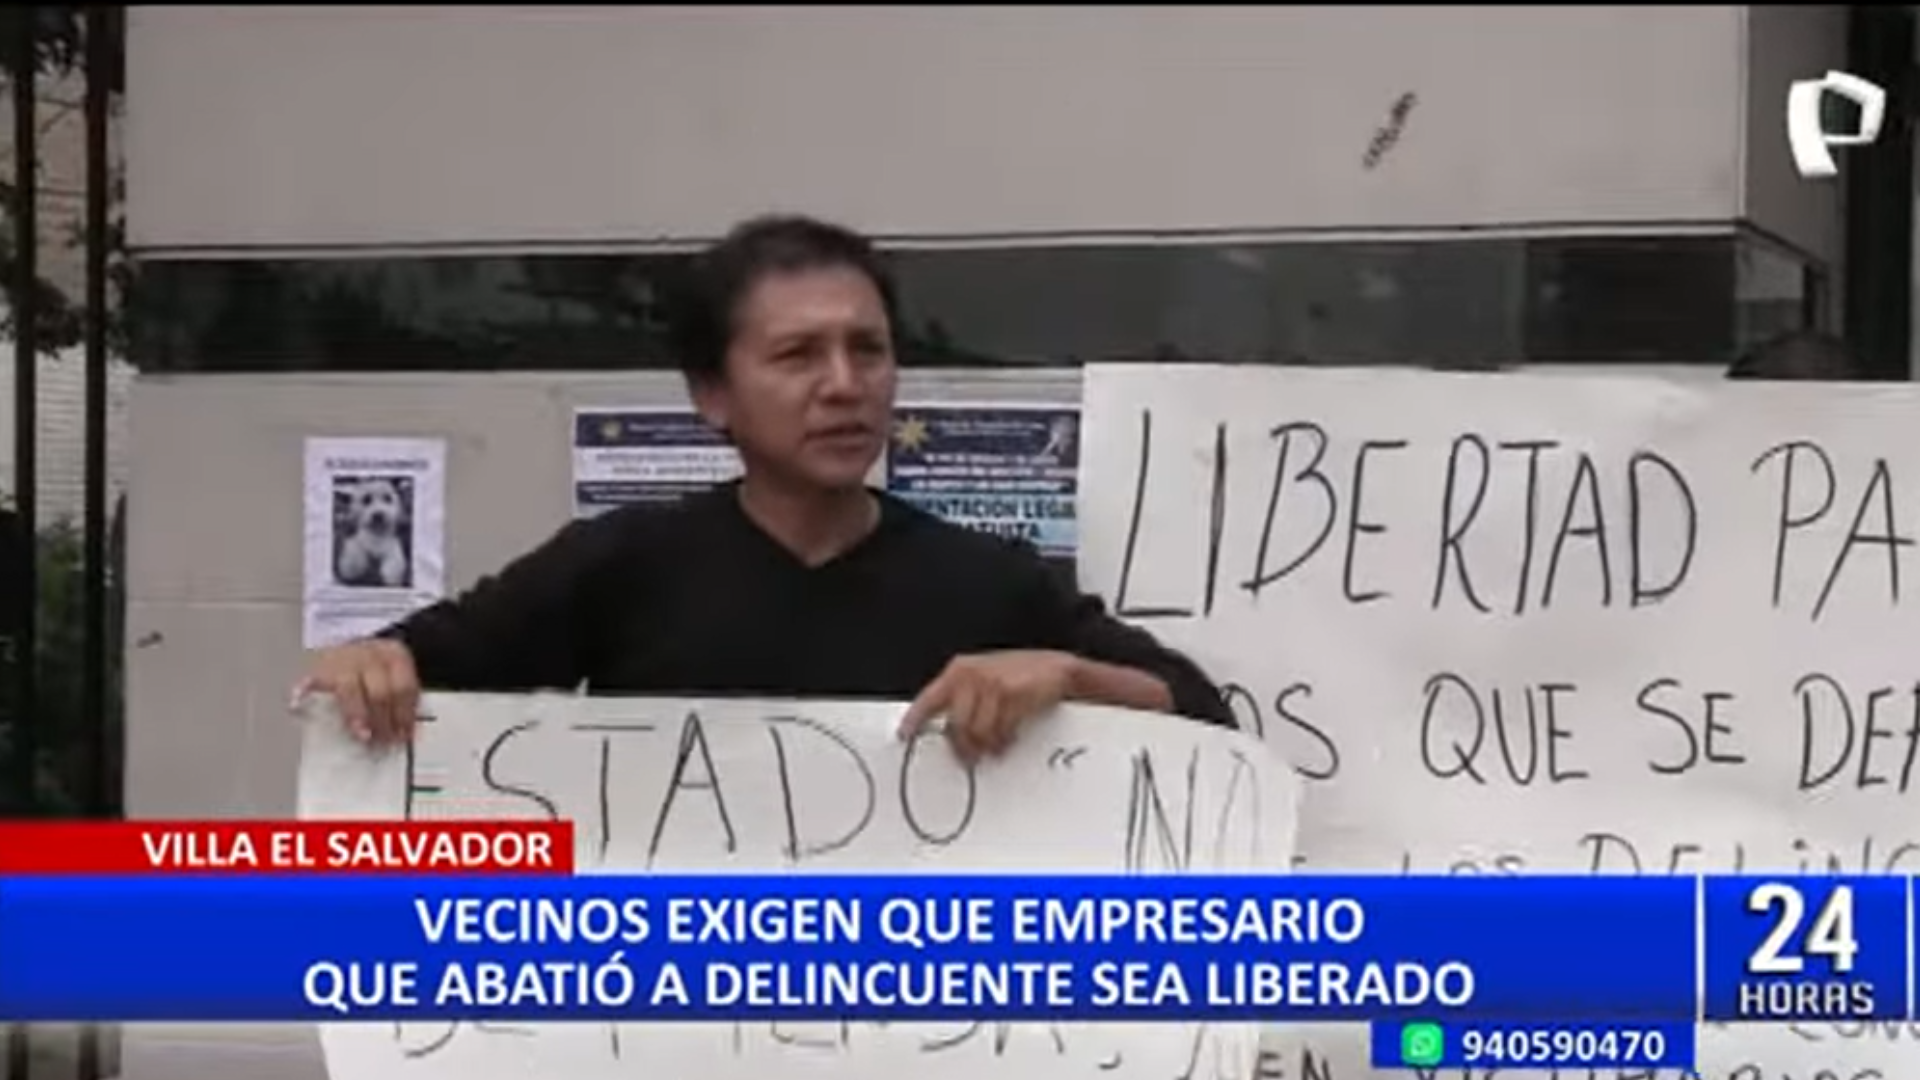 Vecinos piden liberación del dueño de chifa de Villa El Salvador.
Foto: 24 Horas